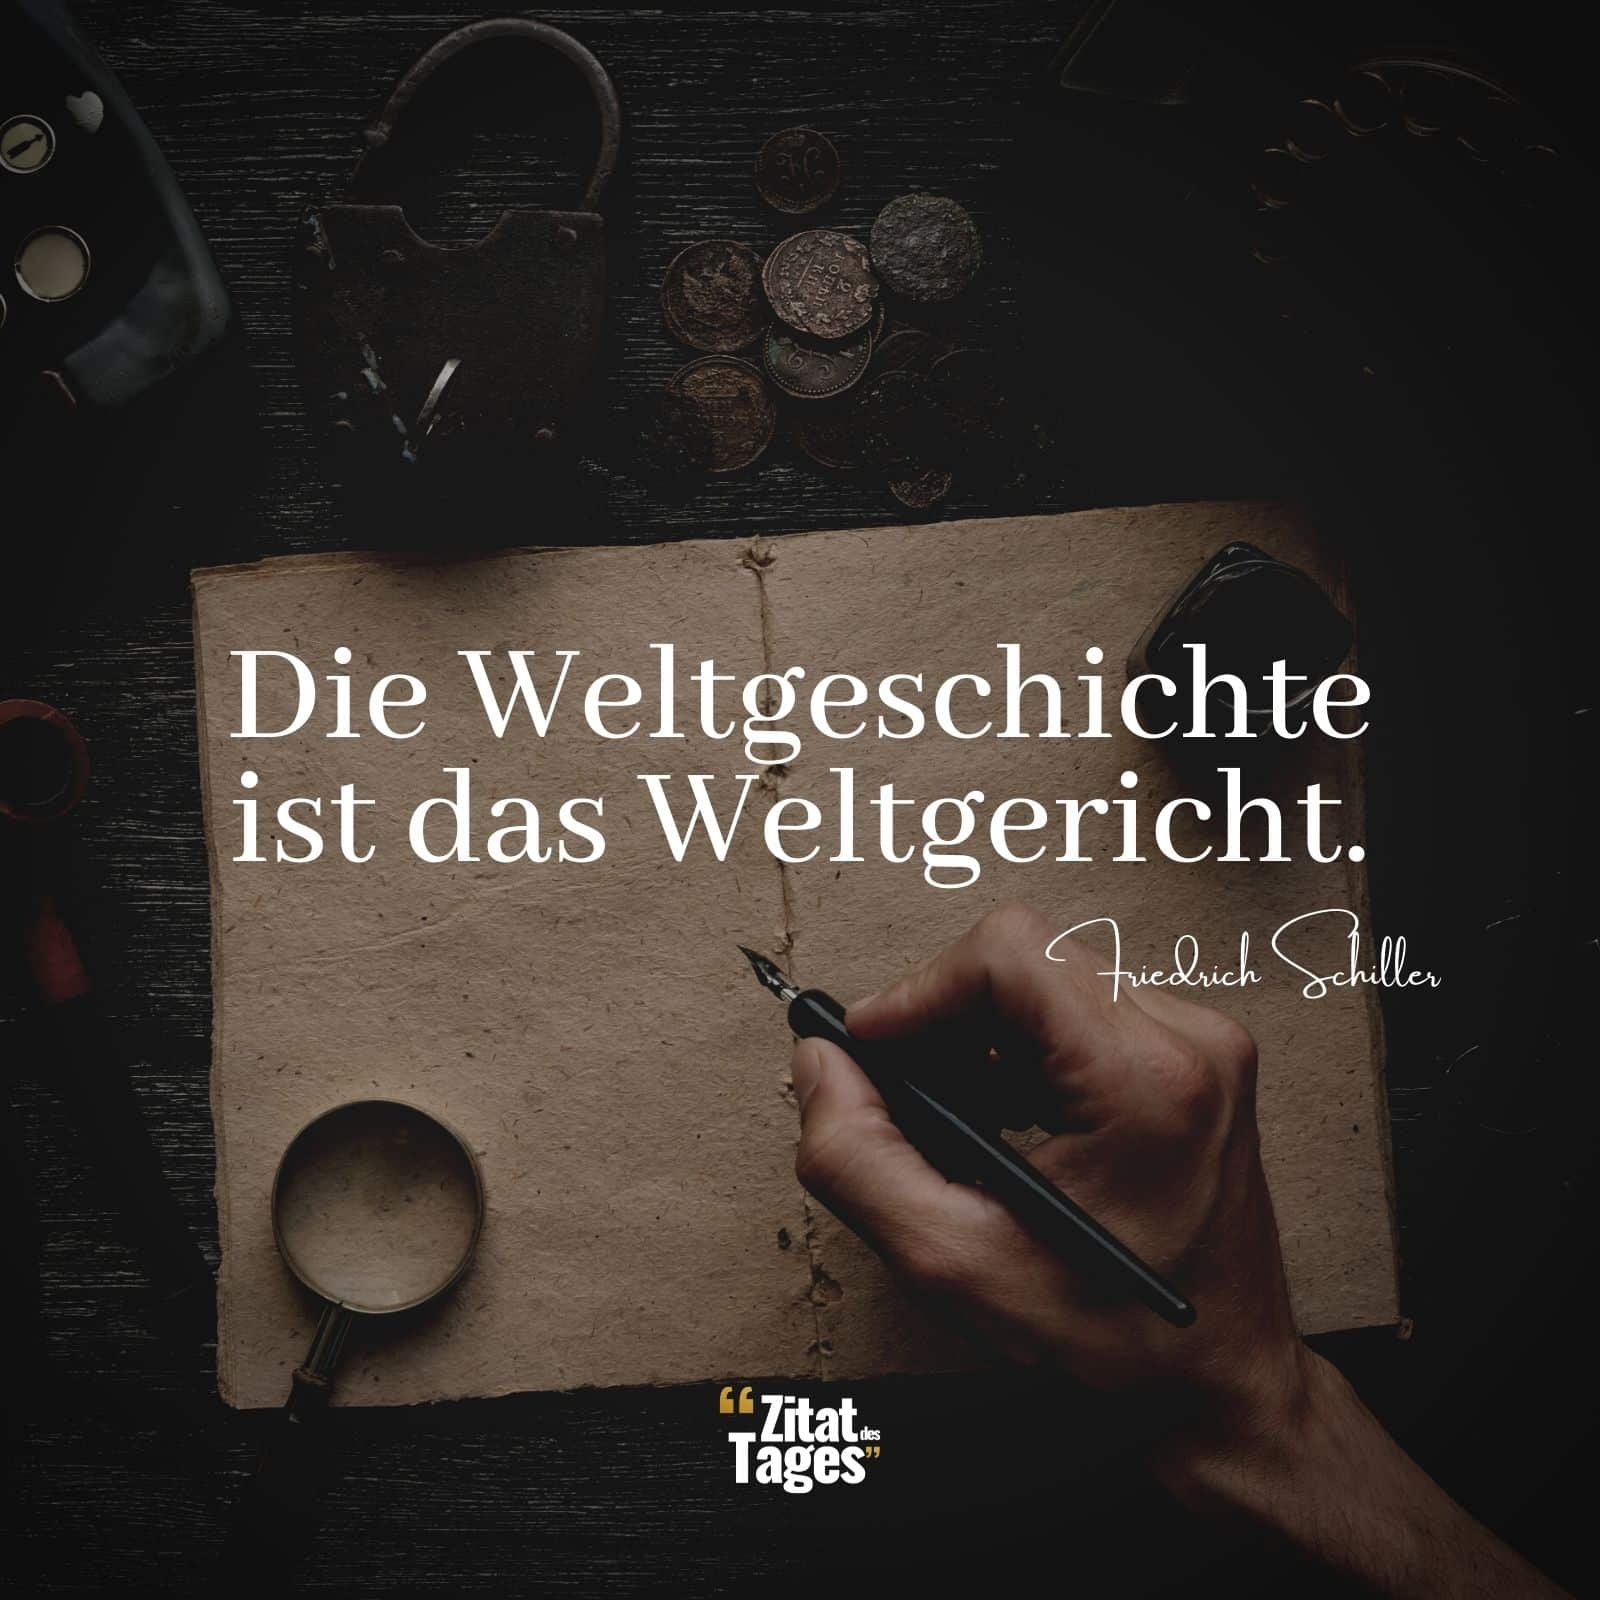 Die Weltgeschichte ist das Weltgericht. - Friedrich Schiller